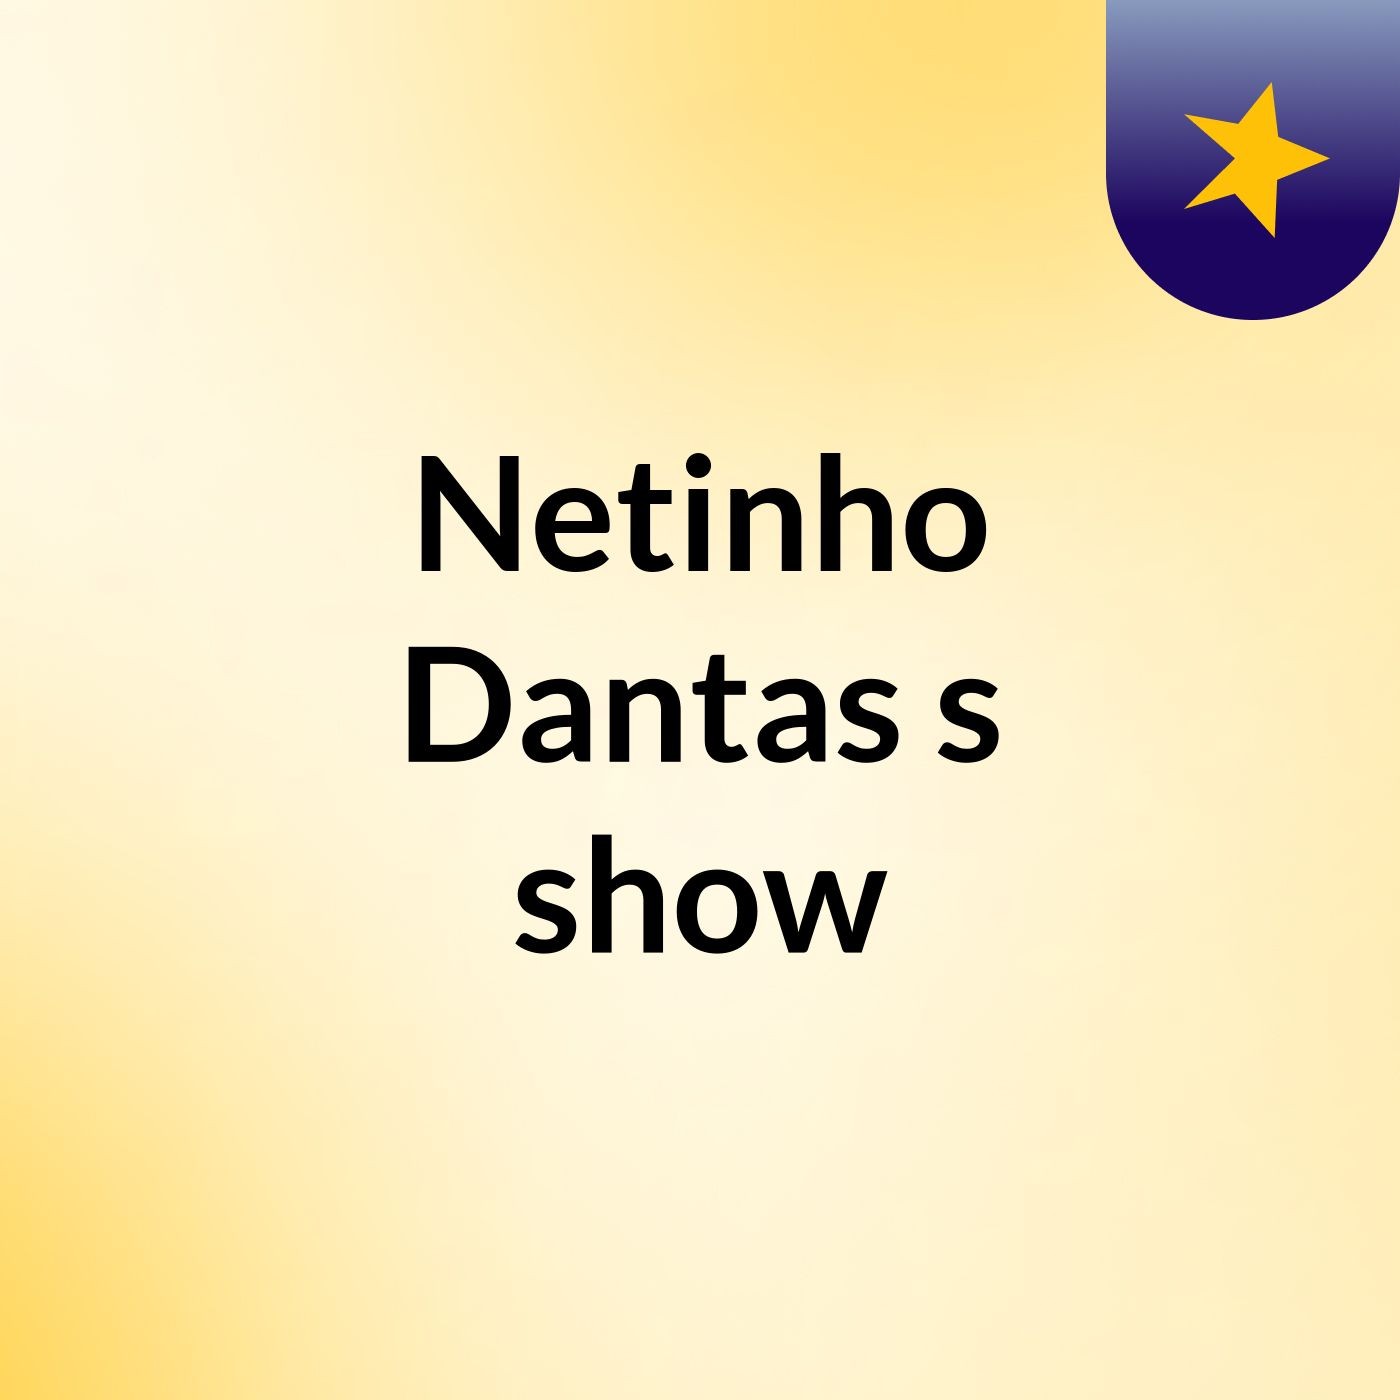 Netinho Dantas's show